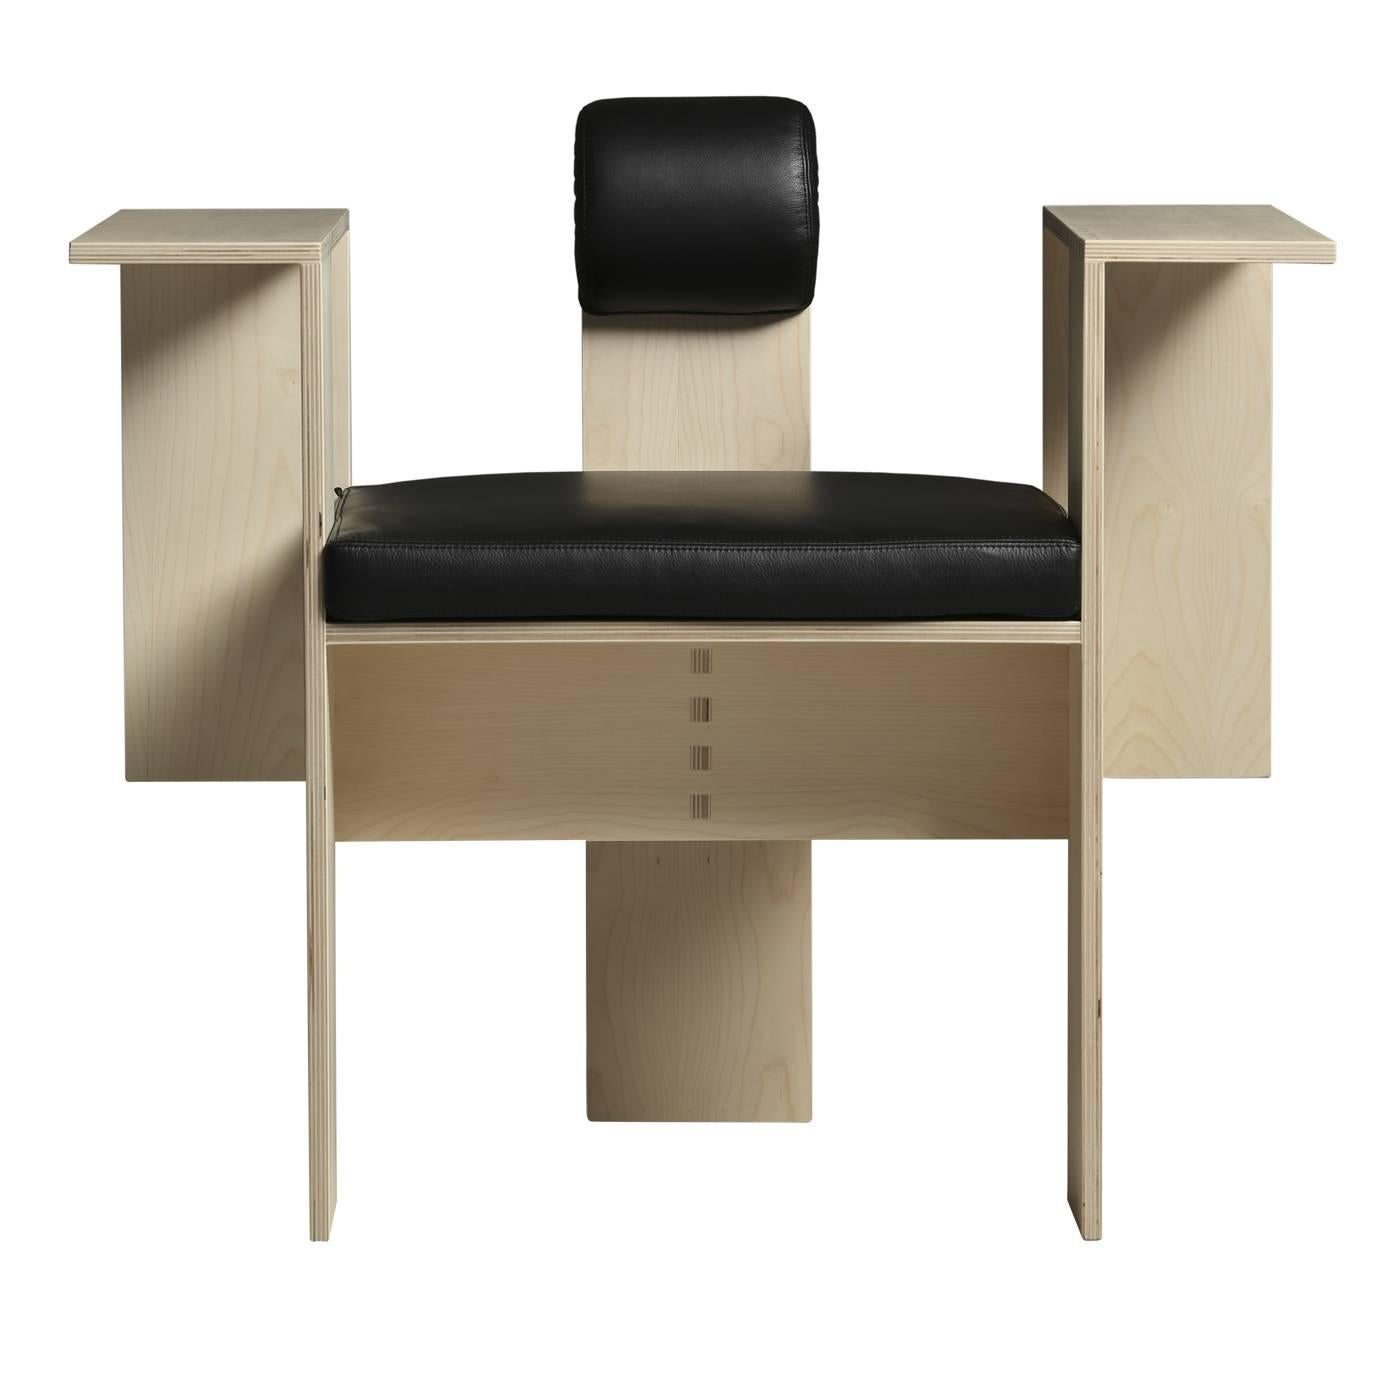 Conçue par Mario Botta, cette chaise exquise est une sculpture fonctionnelle qui fera un effet saisissant dans toutes les pièces où elle sera placée. Les formes géométriques qui composent sa silhouette contemporaine sont réalisées dans des pièces